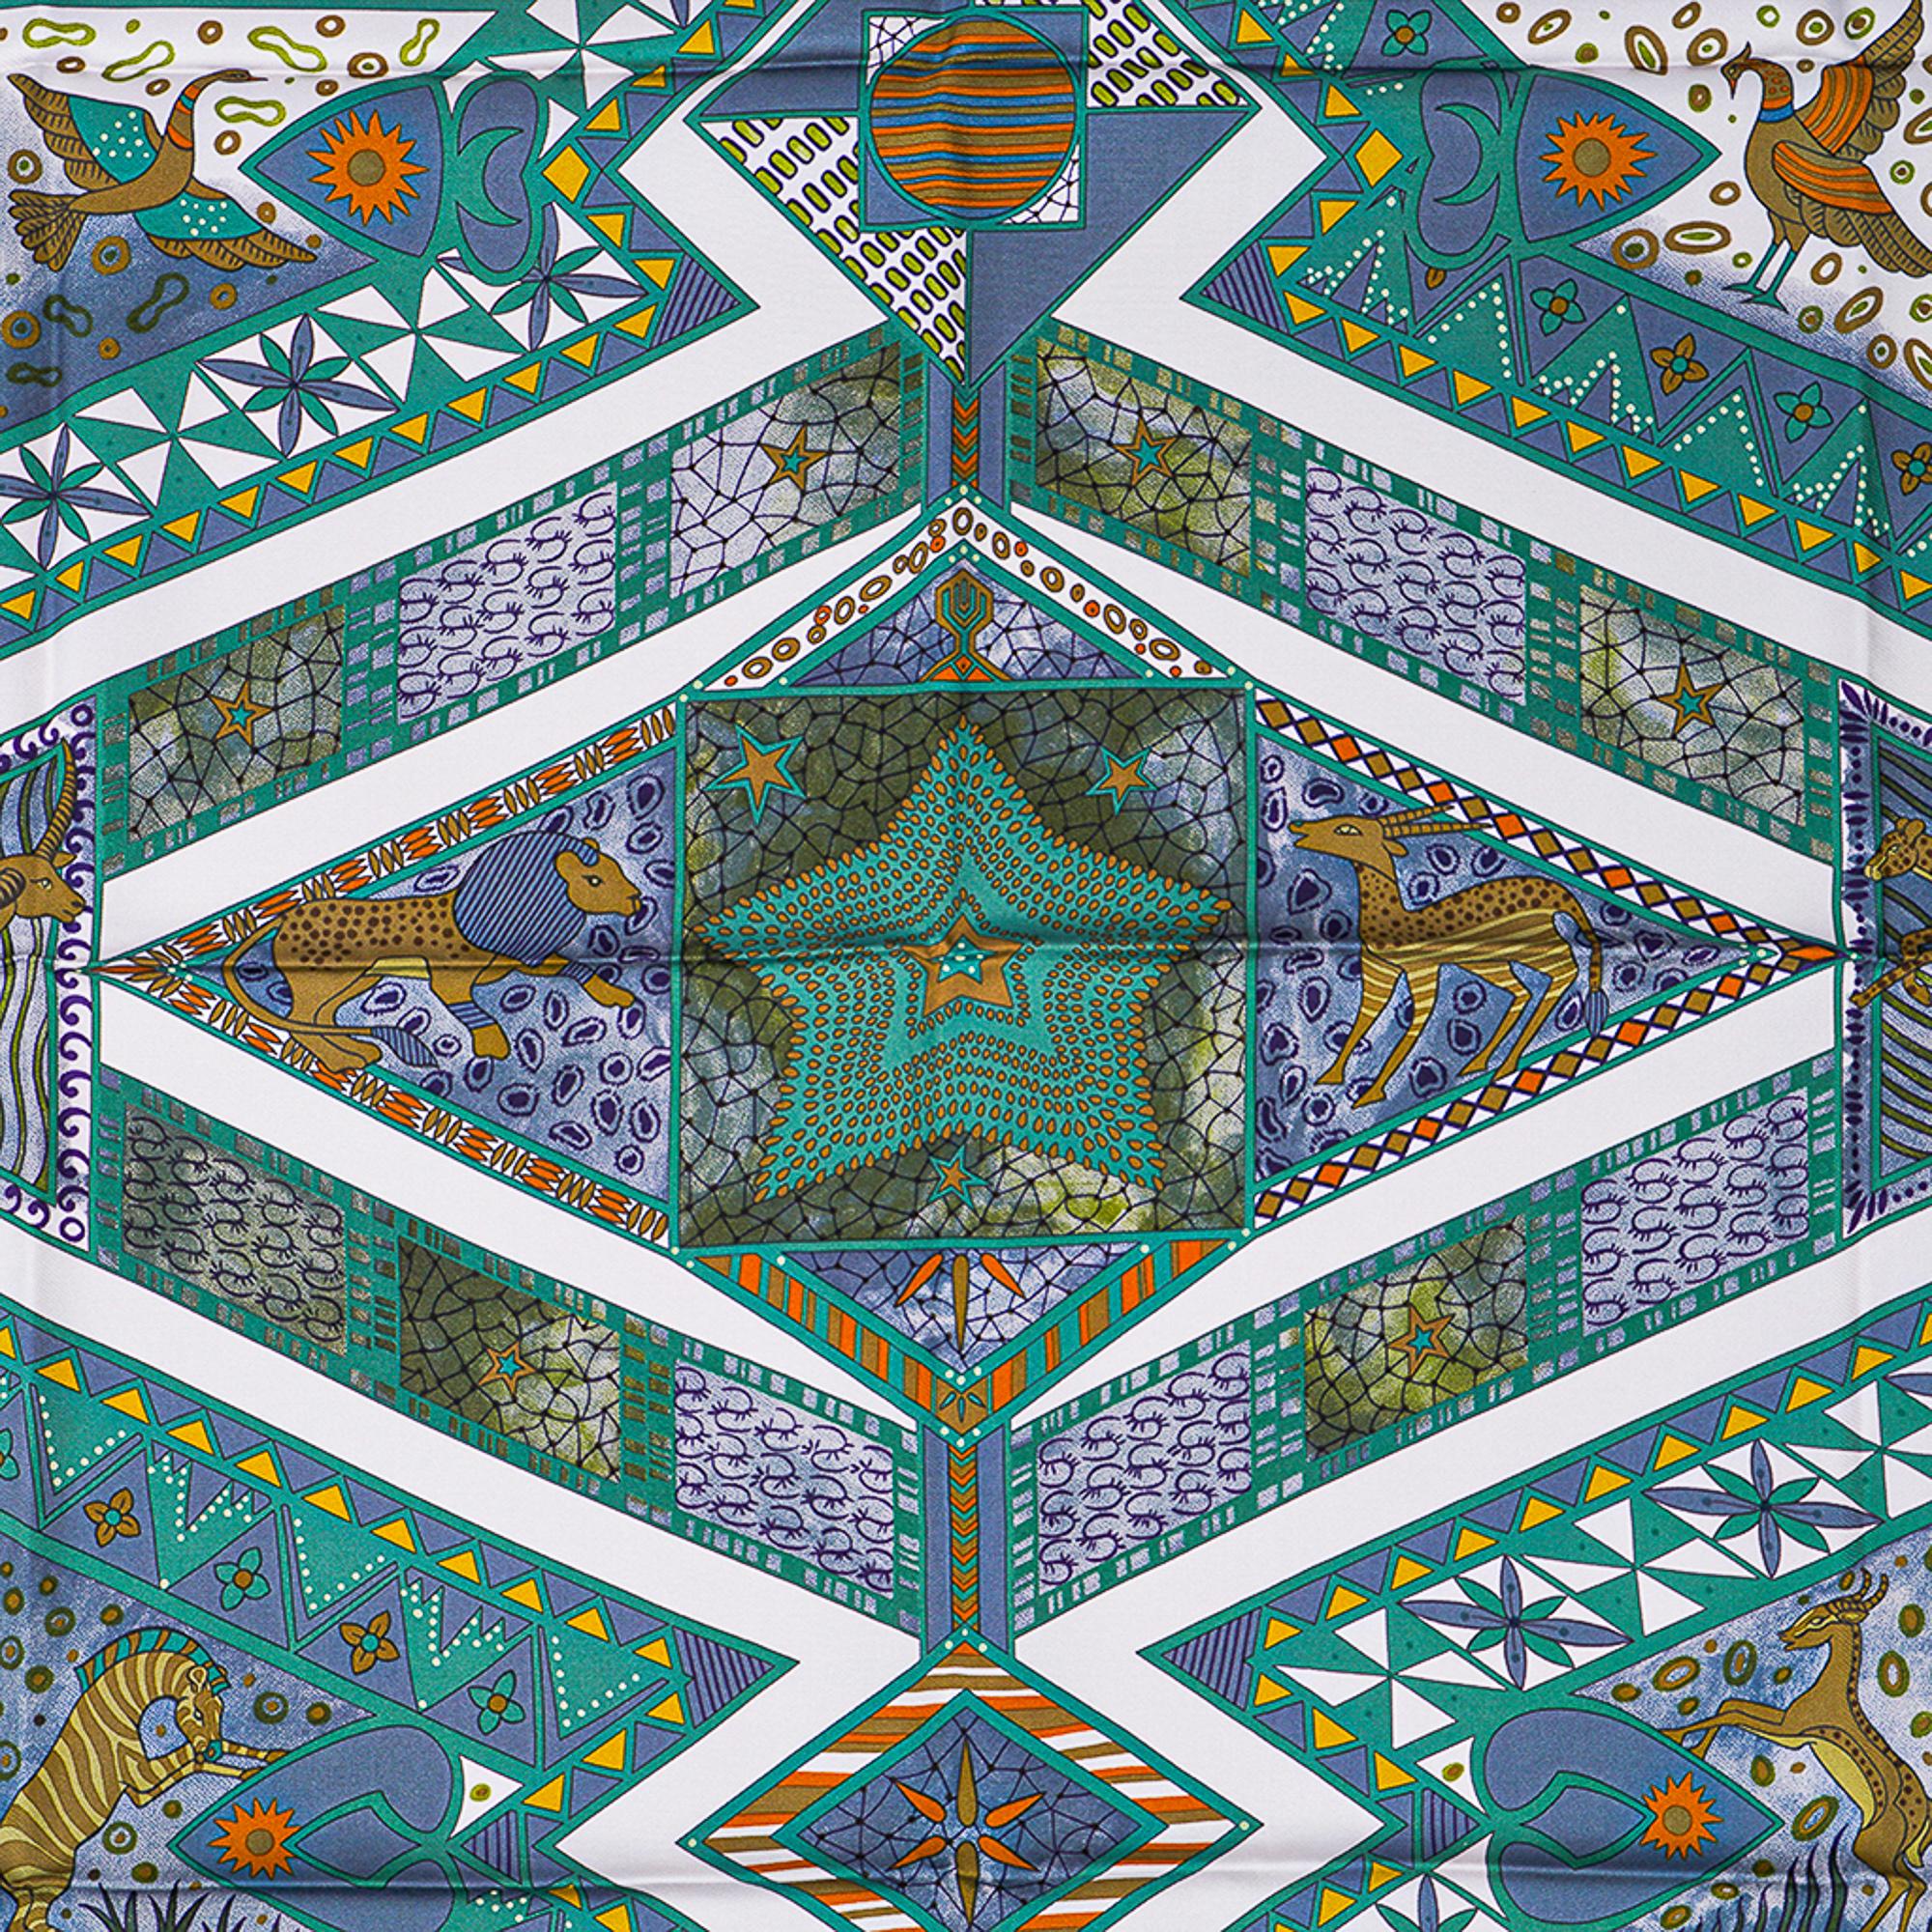 Mightychic propose un foulard en soie Hermès Ors Bleus d'Afrique de Zoe Pauwels.
Coloris vert, chartreuse et marron.
Représente les riches motifs géométriques africains et les animaux originaires du continent.
Bord roulé à la main signature.
Livré